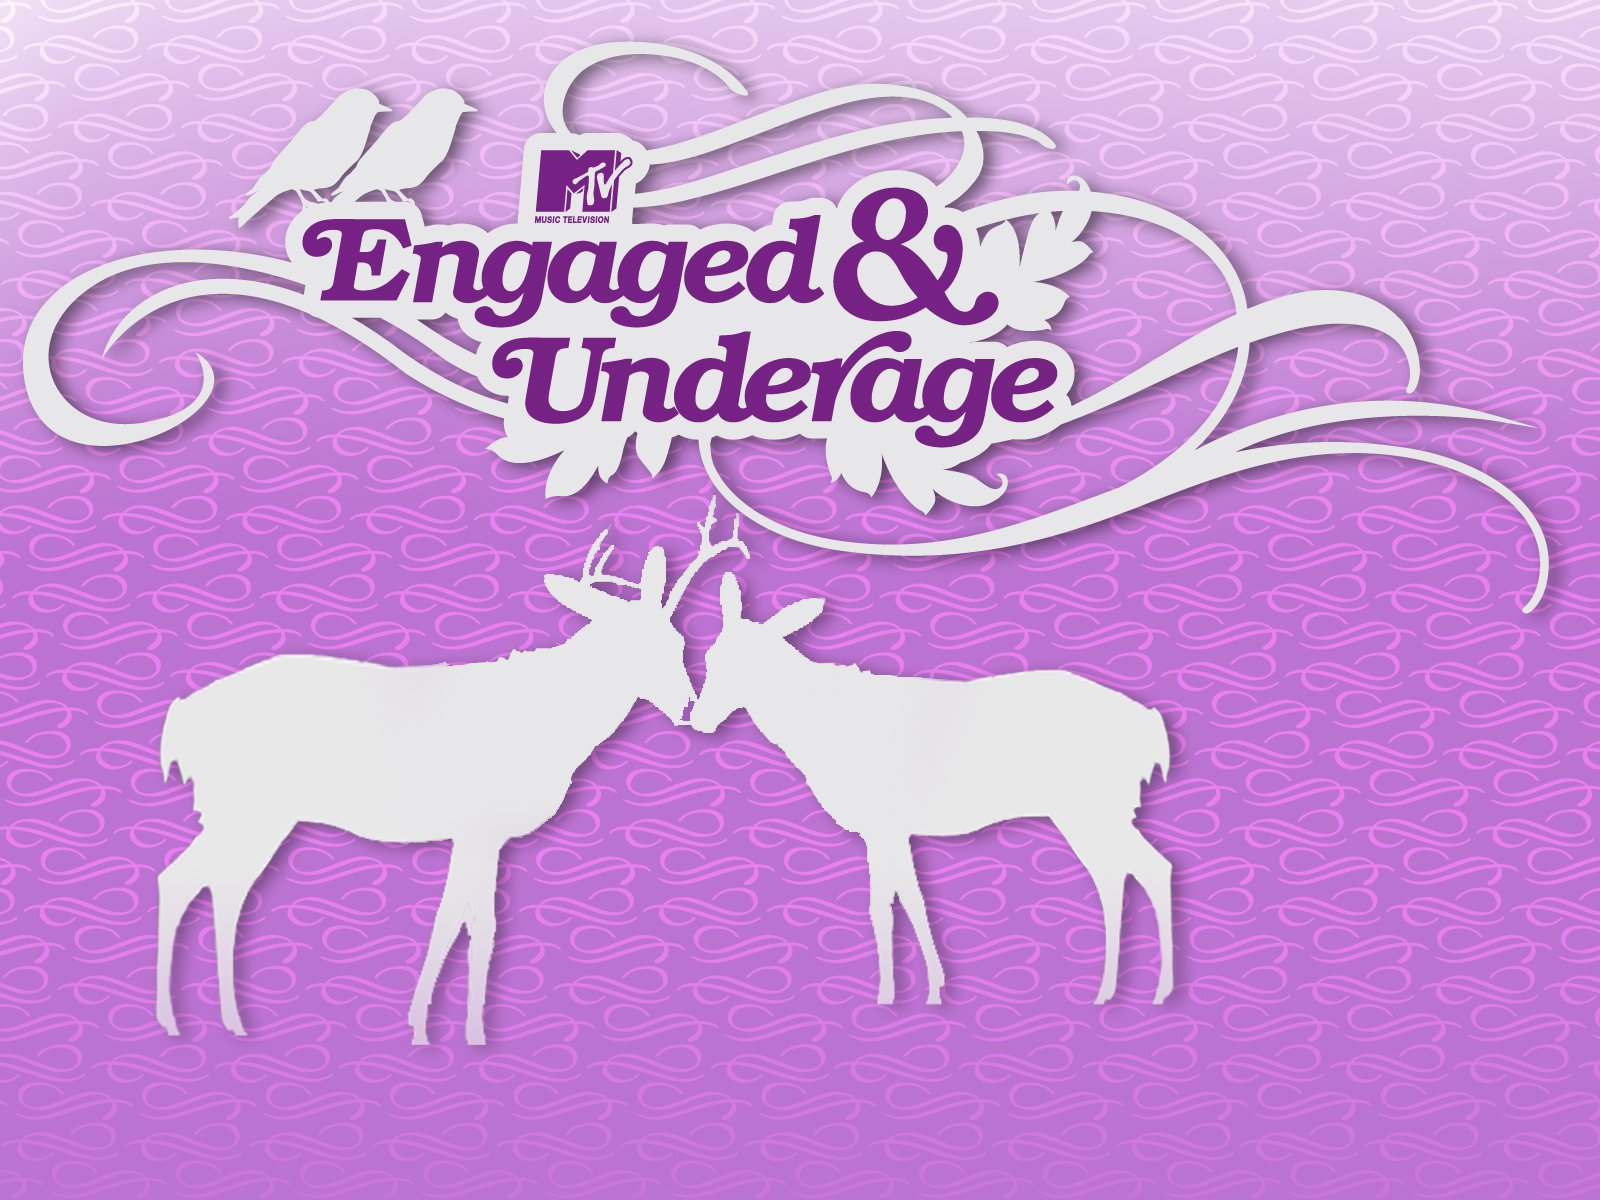 Engaged & Underage